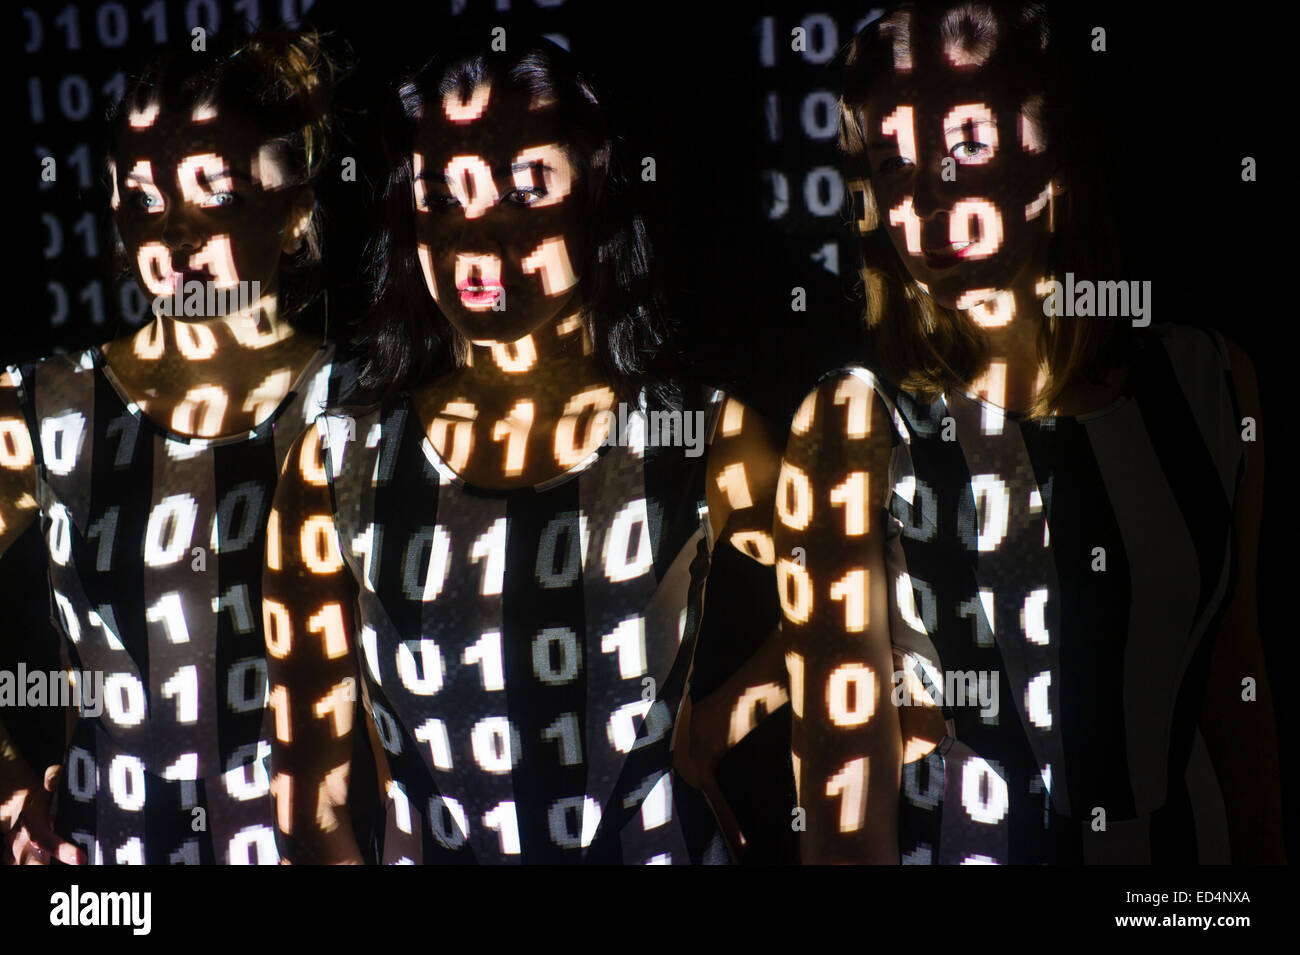 Digitale Kunst: Konzeptbild für Cyber-Terrorismus oder Cyber-Kriminalität Cyber-Kriminalität - eine Gruppe von 3 drei junge Frauen Mädchen mit ihren Gesichtern maskiert und verschleiert durch digitale Bitmap-Muster von binären Computer-Code auf ihren Gesichtern projiziert. Stockfoto